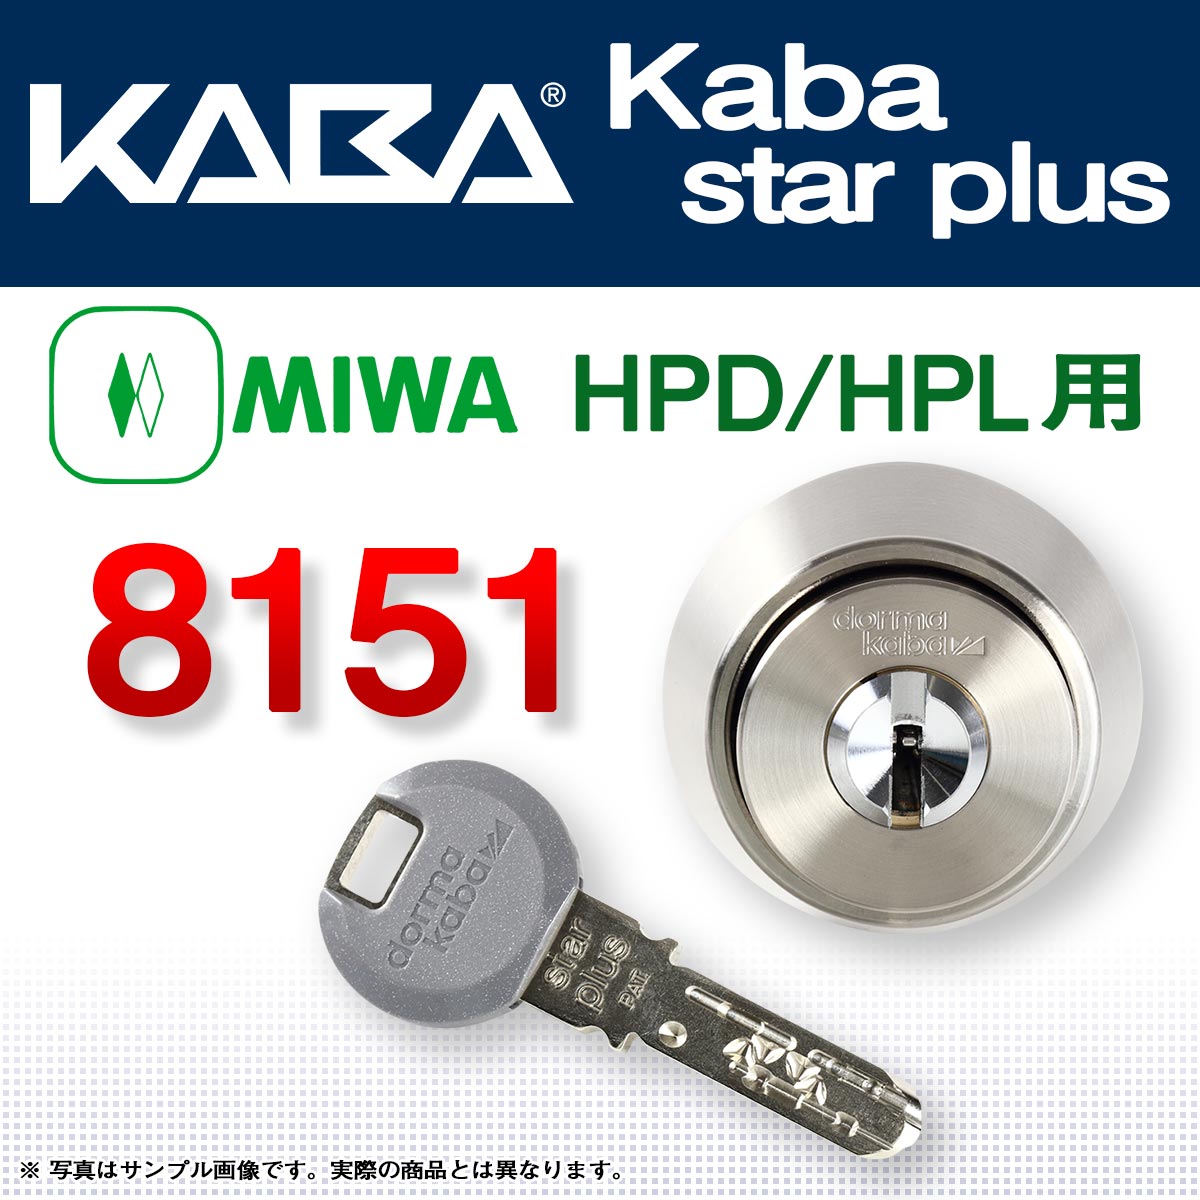 カバスタープラス 8151 【MIWA HPD,HPL】美和ロック HPD,HPL交換用